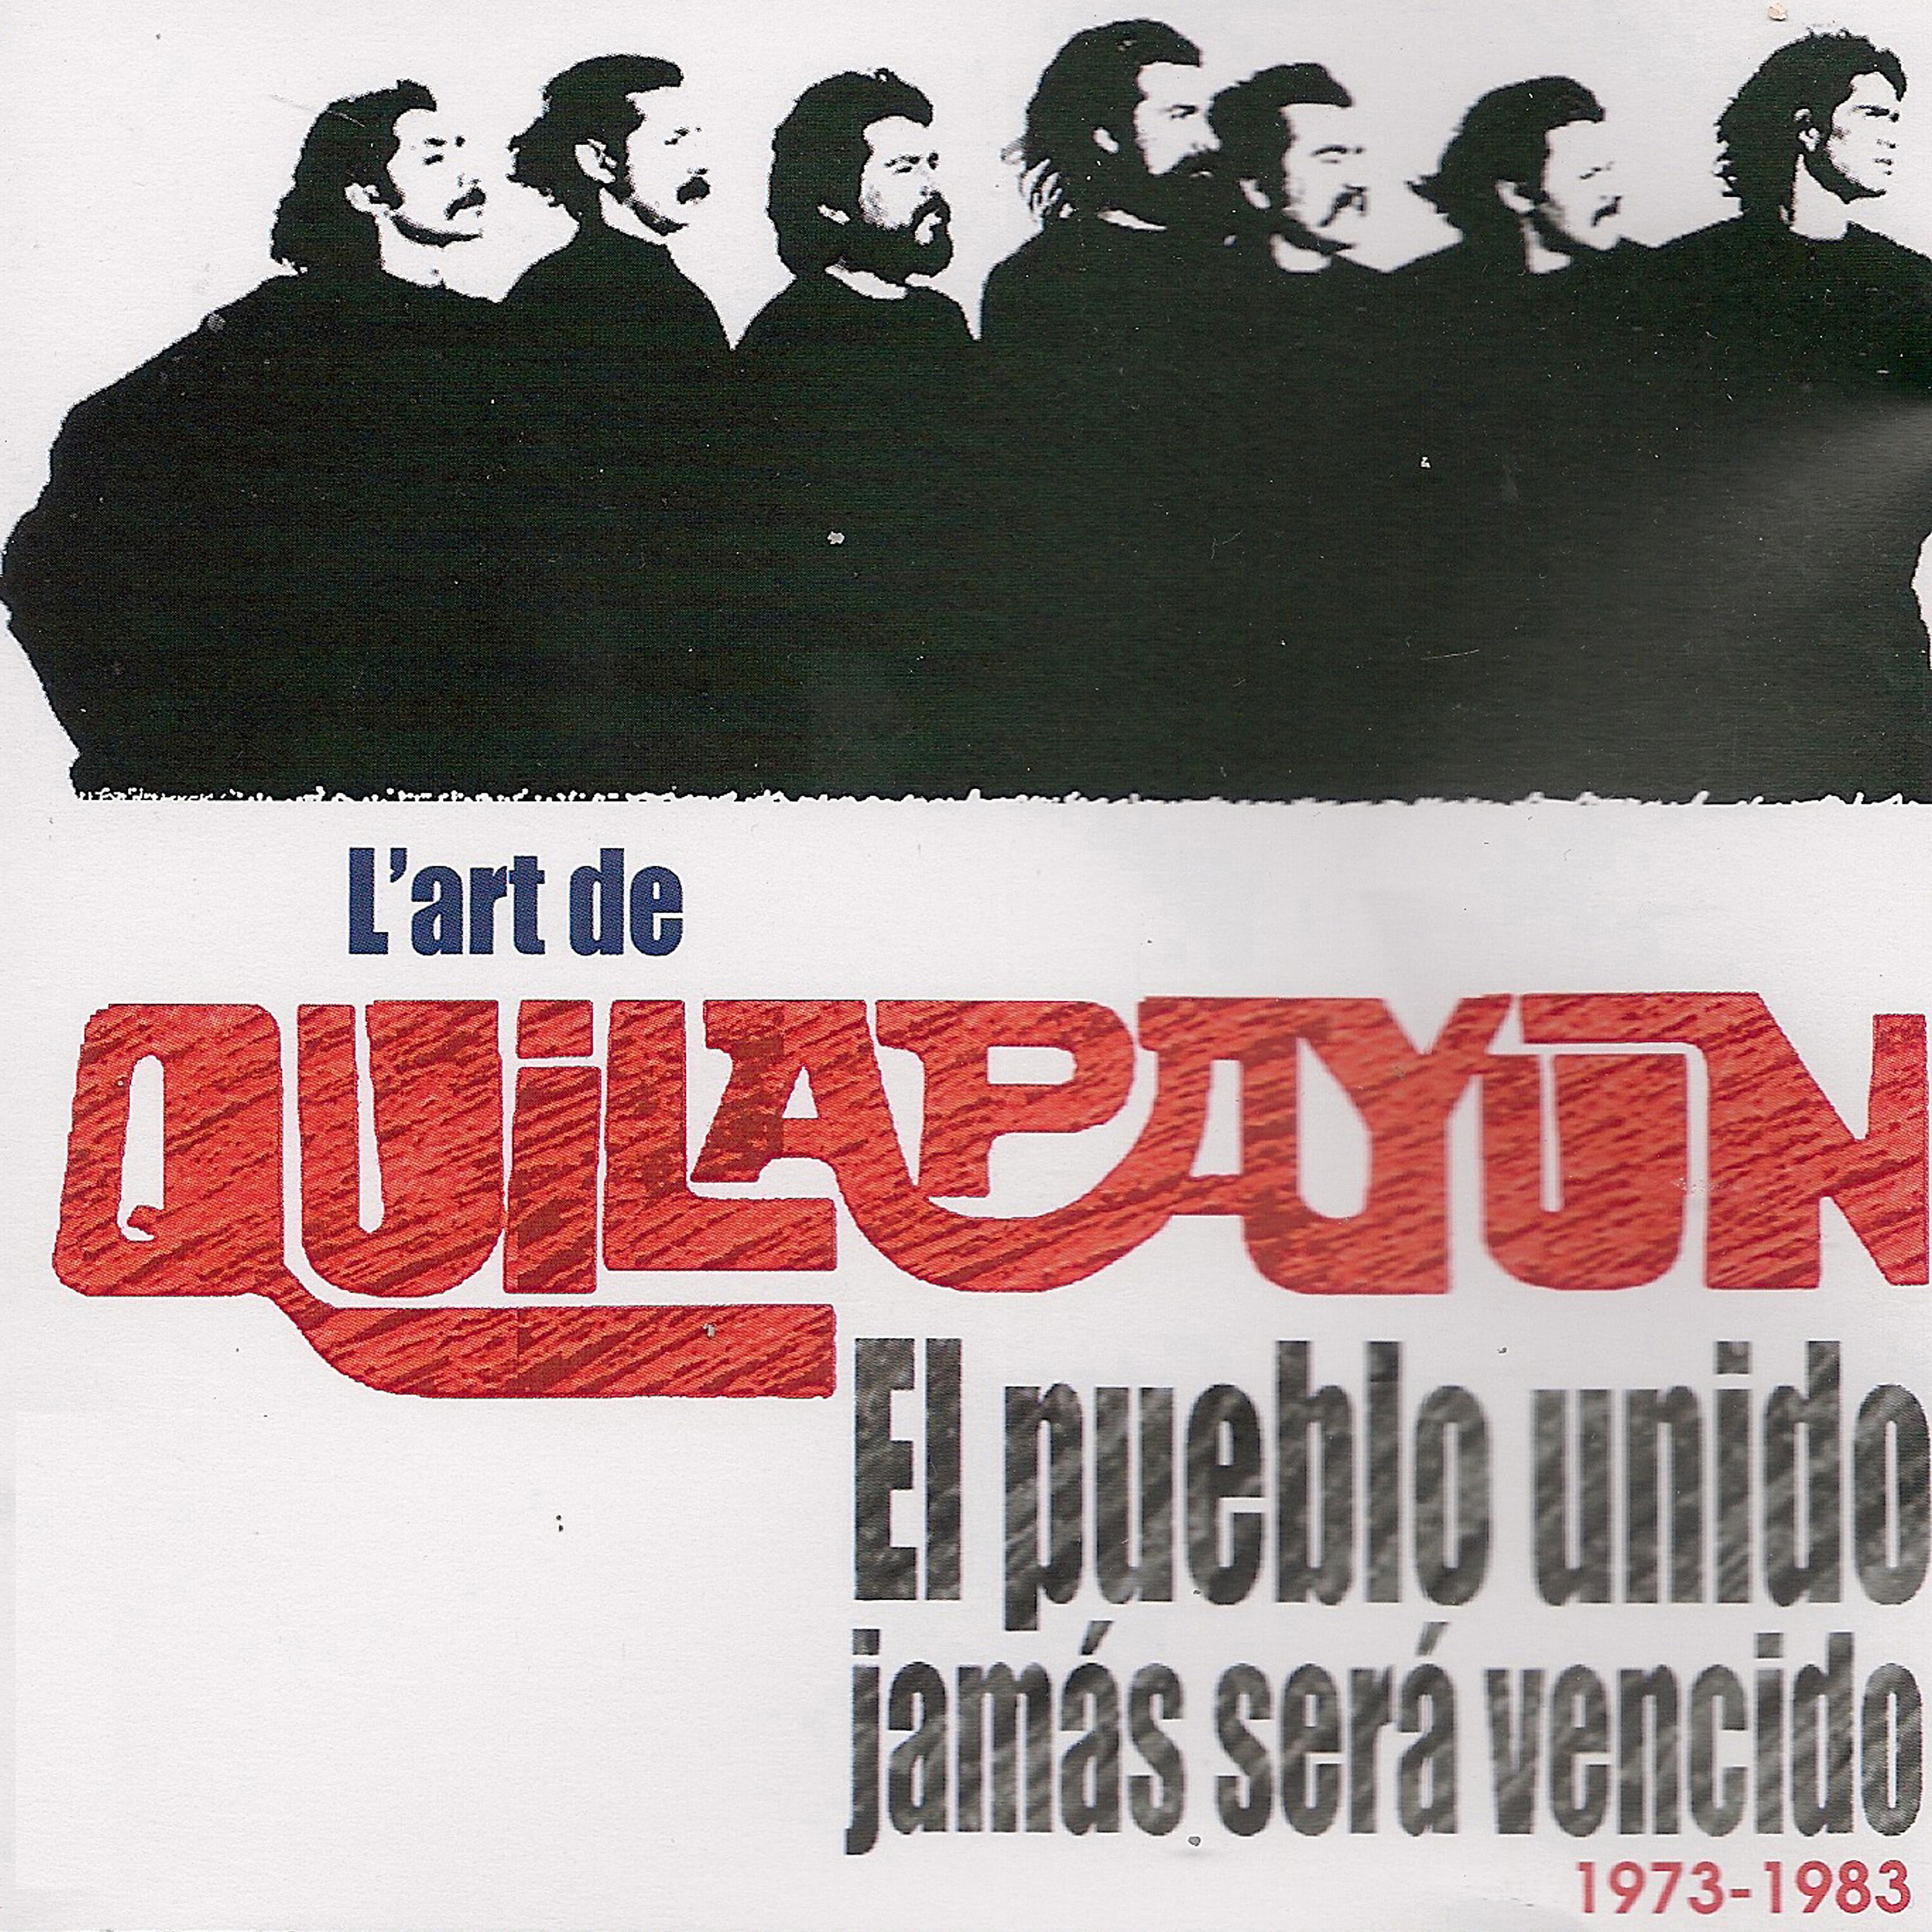 Постер альбома El pueblo unido jamás será vencido (1973-1983) [Collection "L'art de..."]